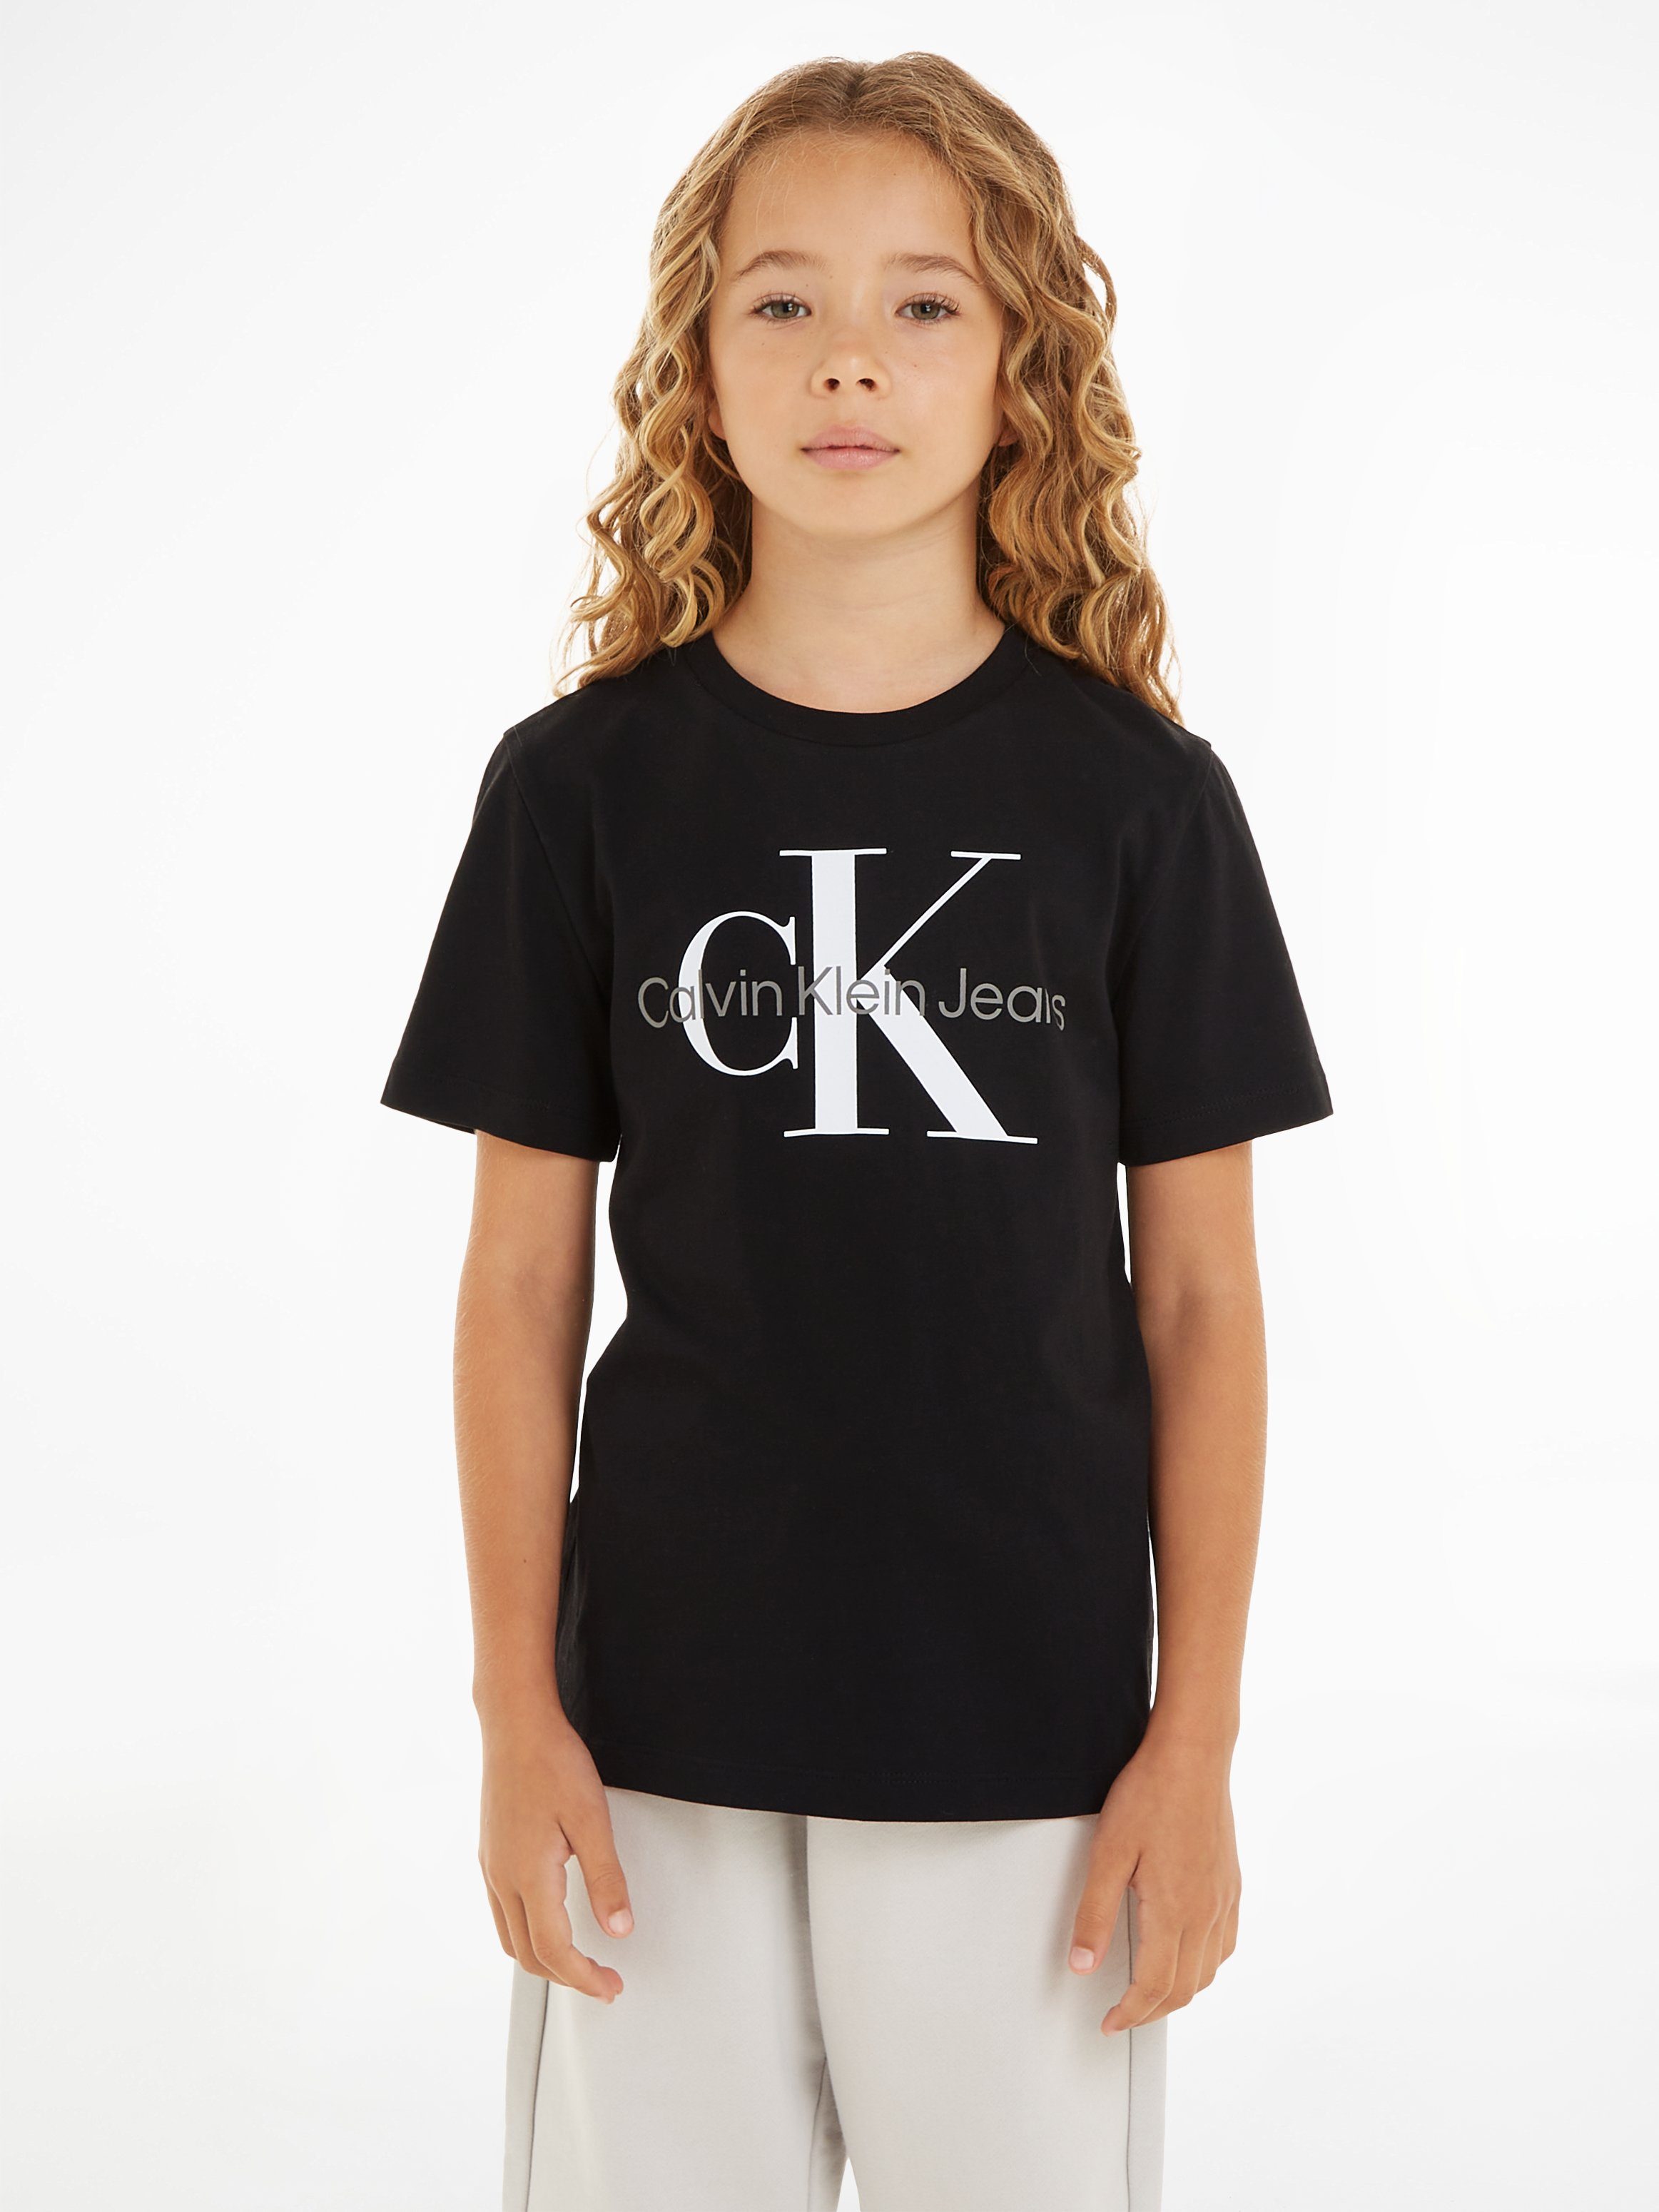 Calvin Klein Jeans T-Shirt CK T-SHIRT Black Ck MONOGRAM SS